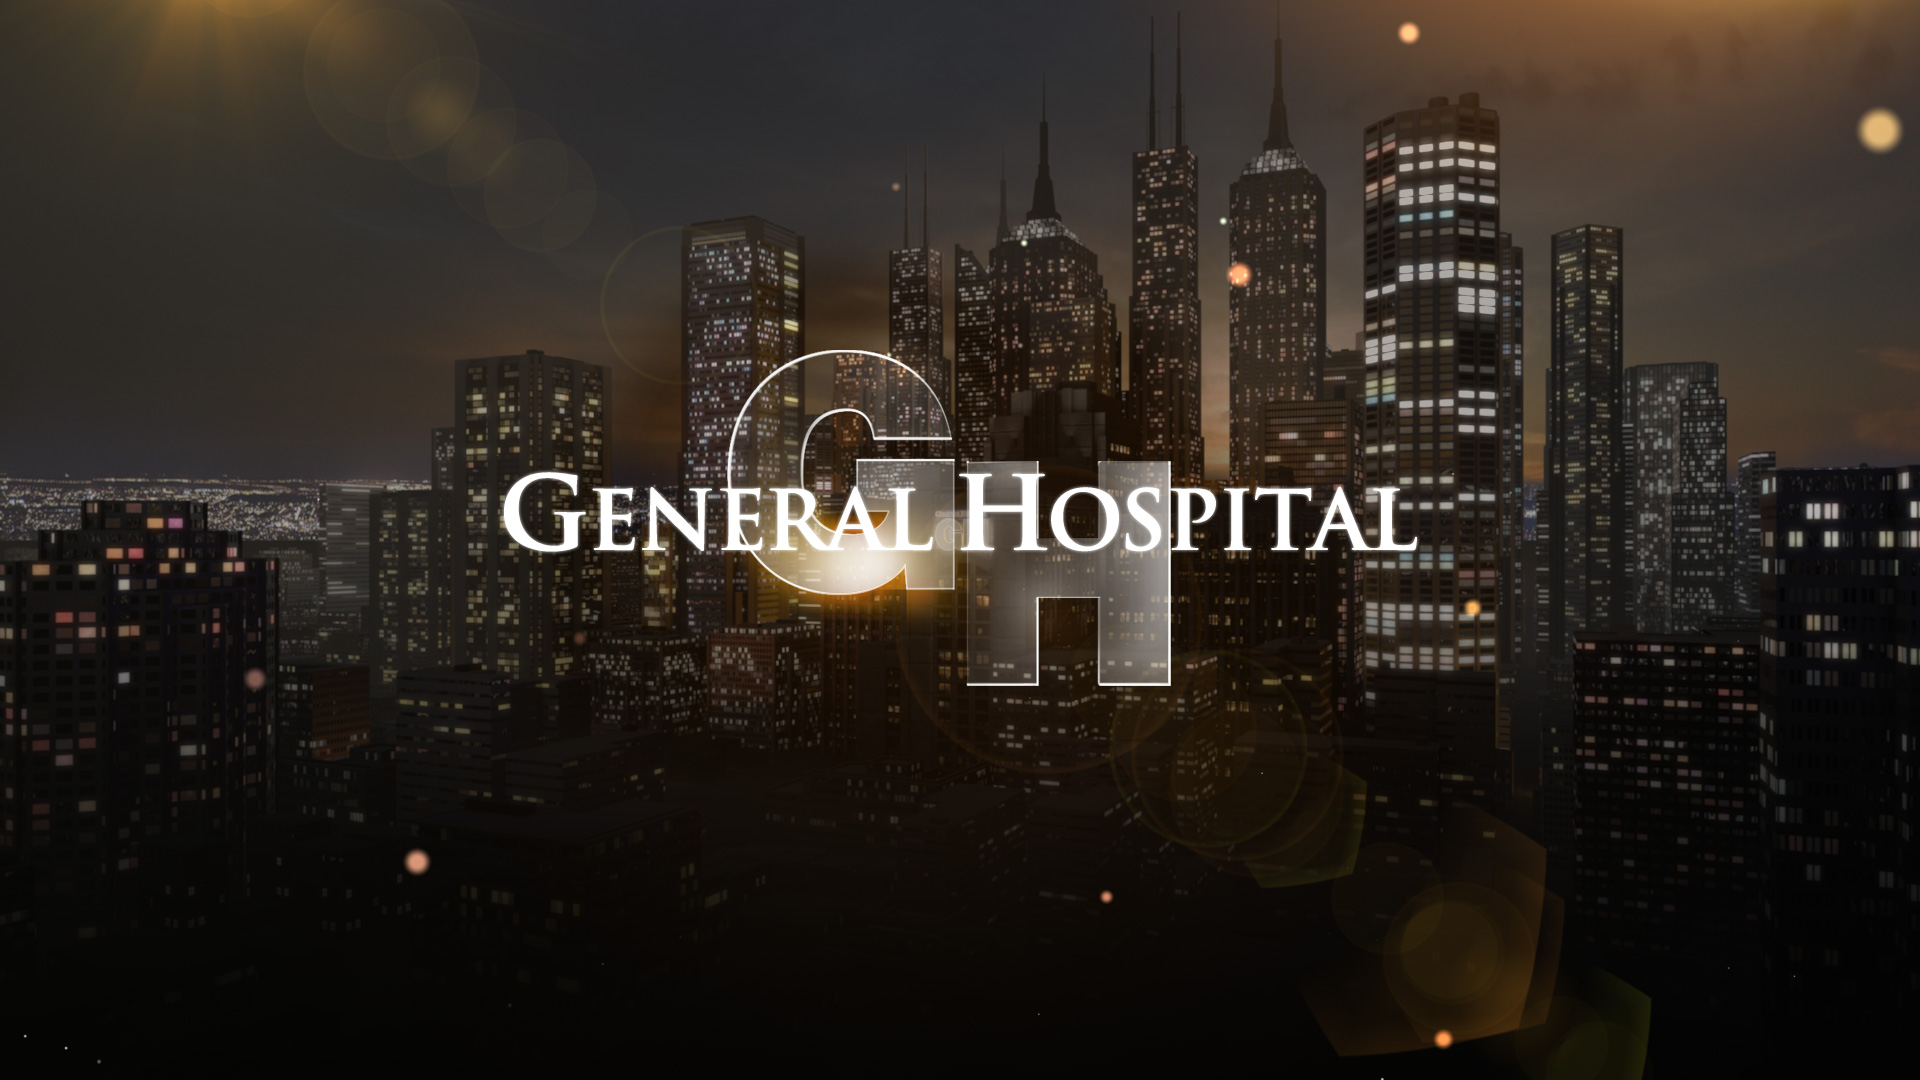 General Hospital Episode Delayed